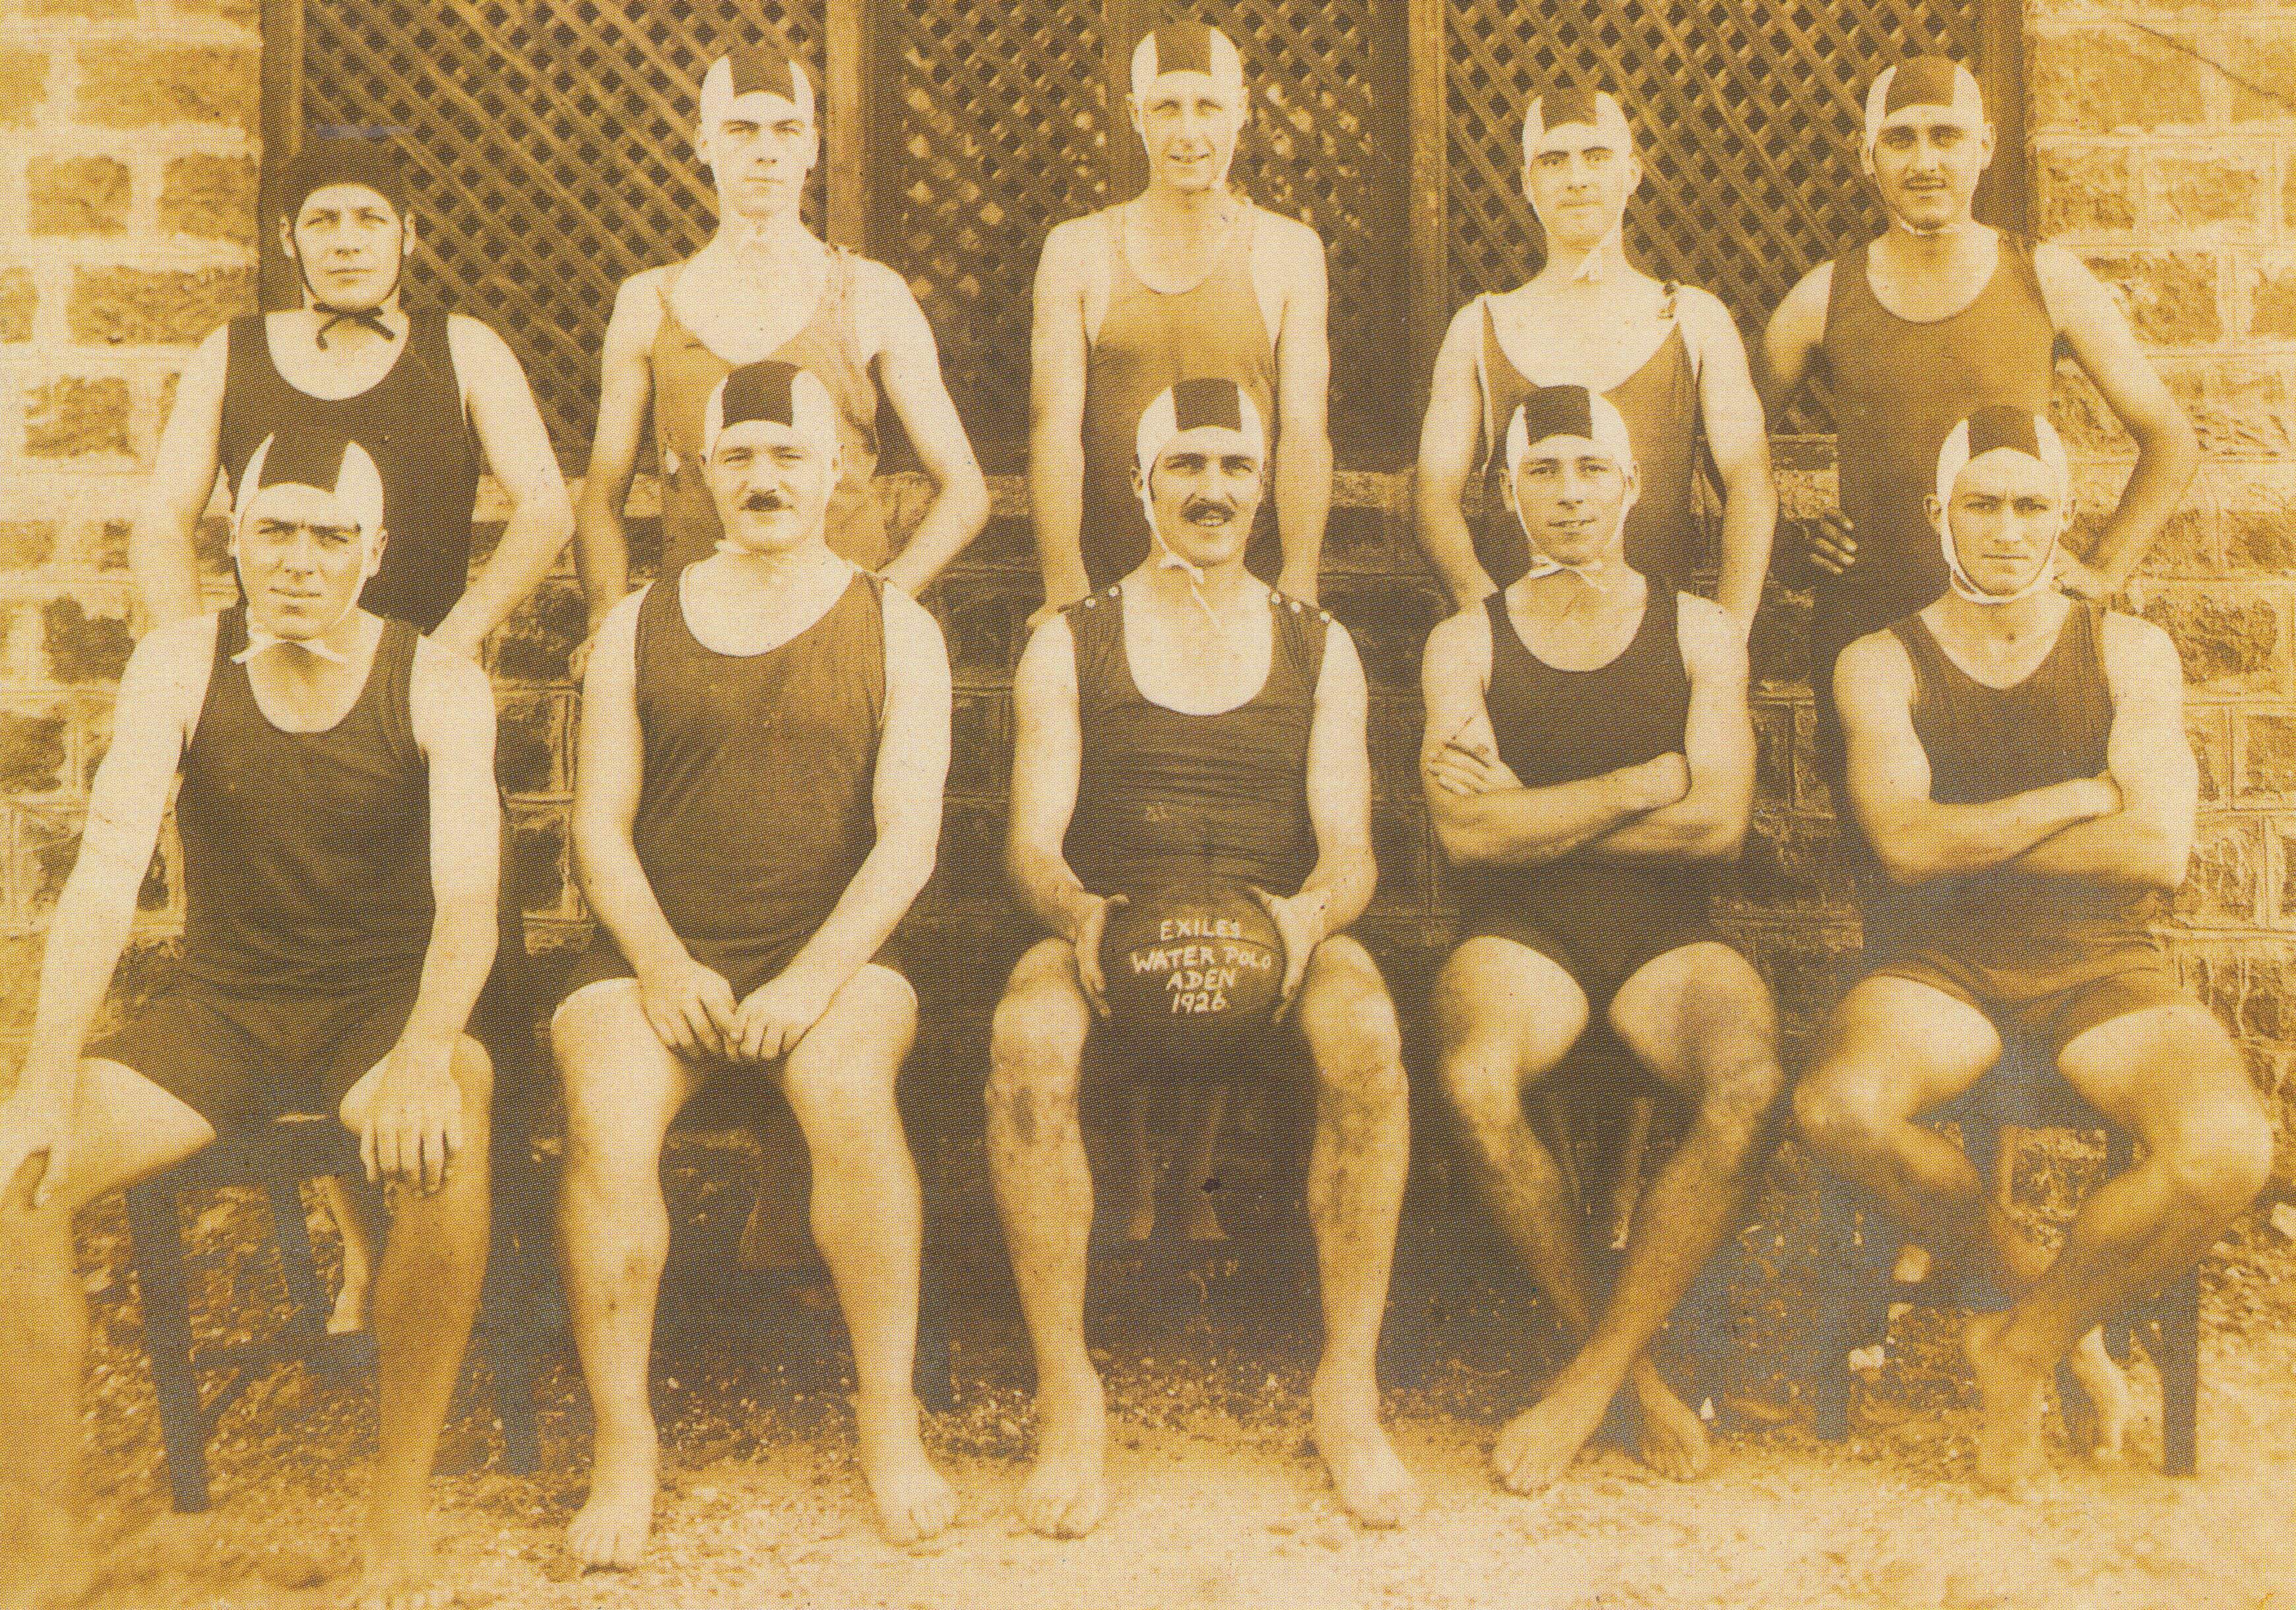 1926 Aden Exiles Water Polo team, Eastern Telco